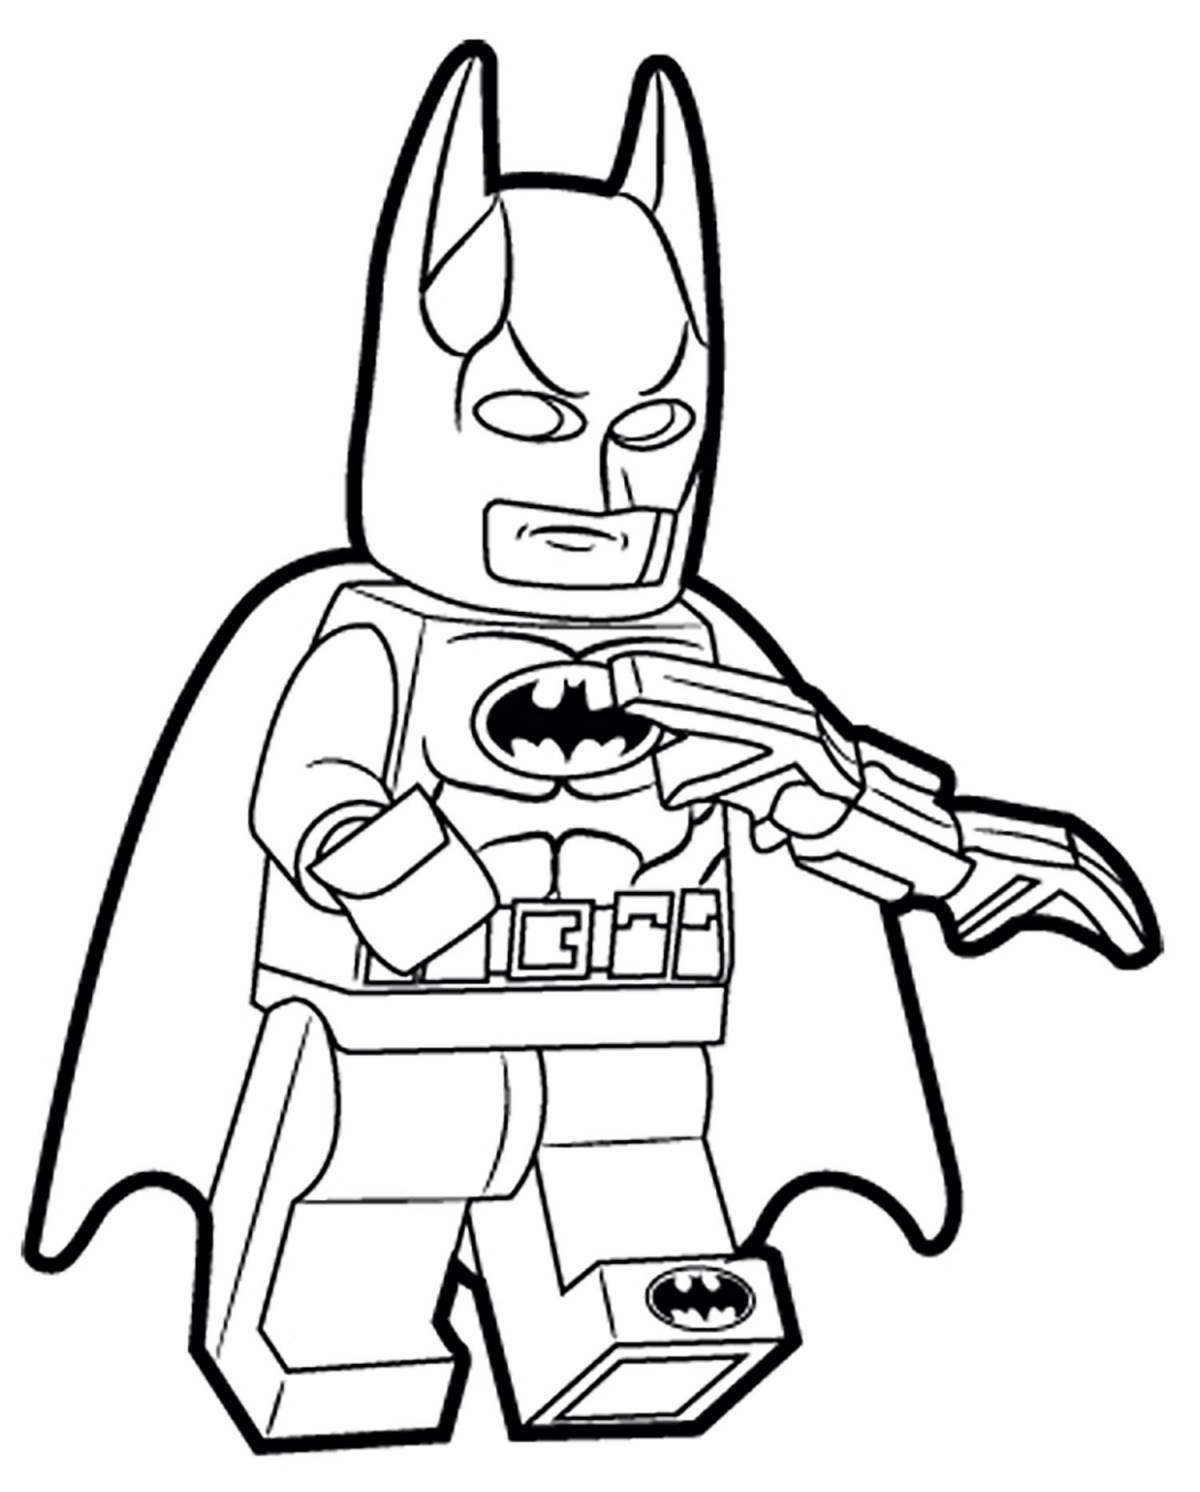 Glamorous Batman coloring page